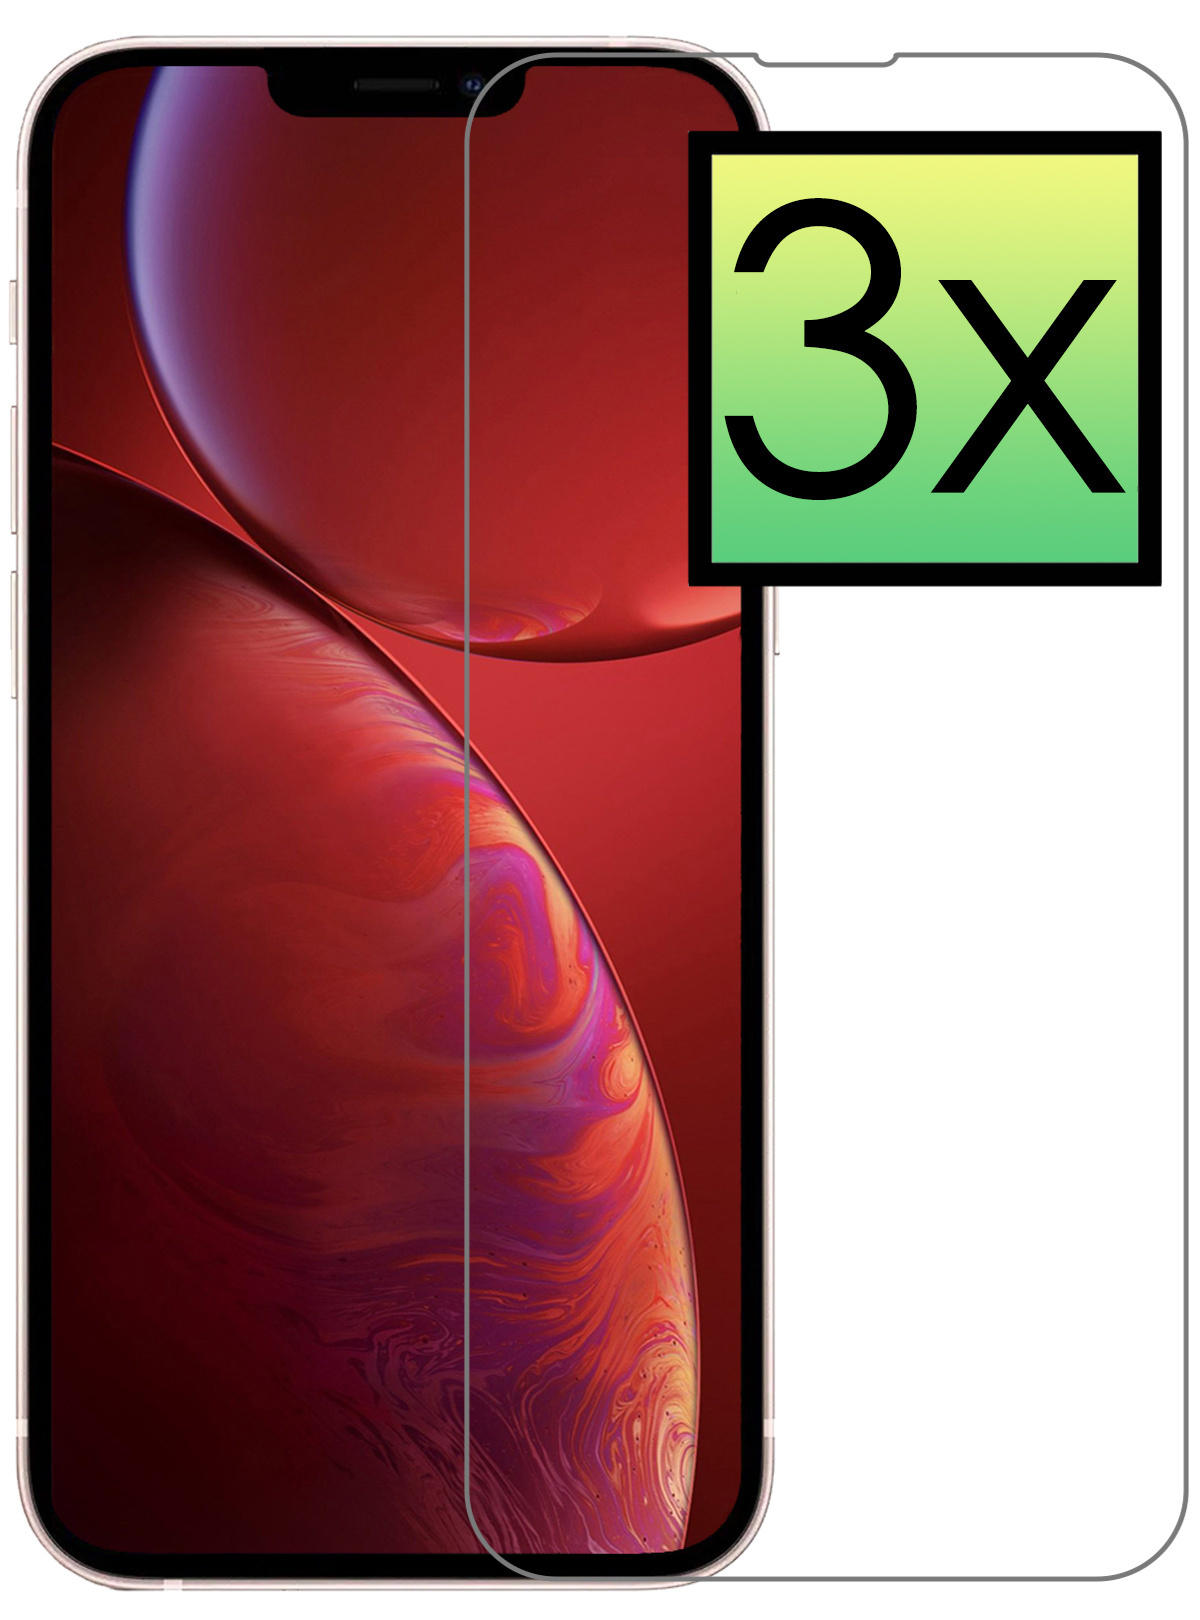 NoXx Screenprotector voor iPhone 13 Pro Max Screenprotector Bescherm Glas Gehard Dichte Notch - Screenprotector voor iPhone 13 Pro Max Screen Protector Tempered Glass - 3x